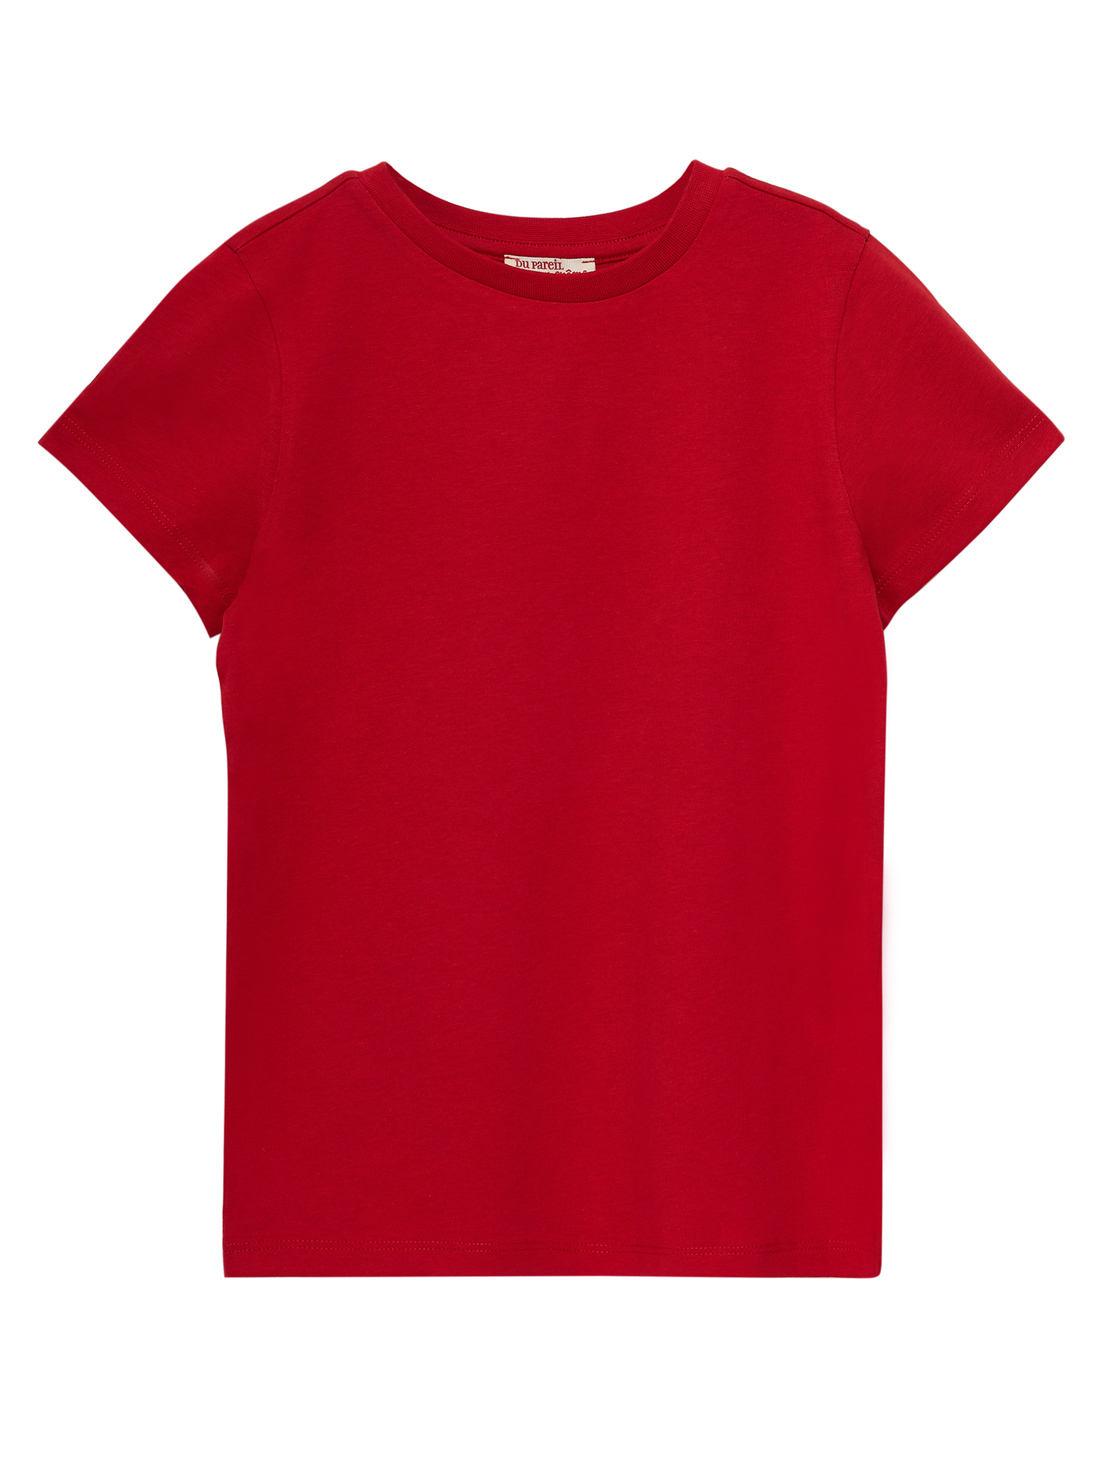 Tee Shirt Manches Courtes Uni Garçon Rouge - 4A - Du Pareil Au Même